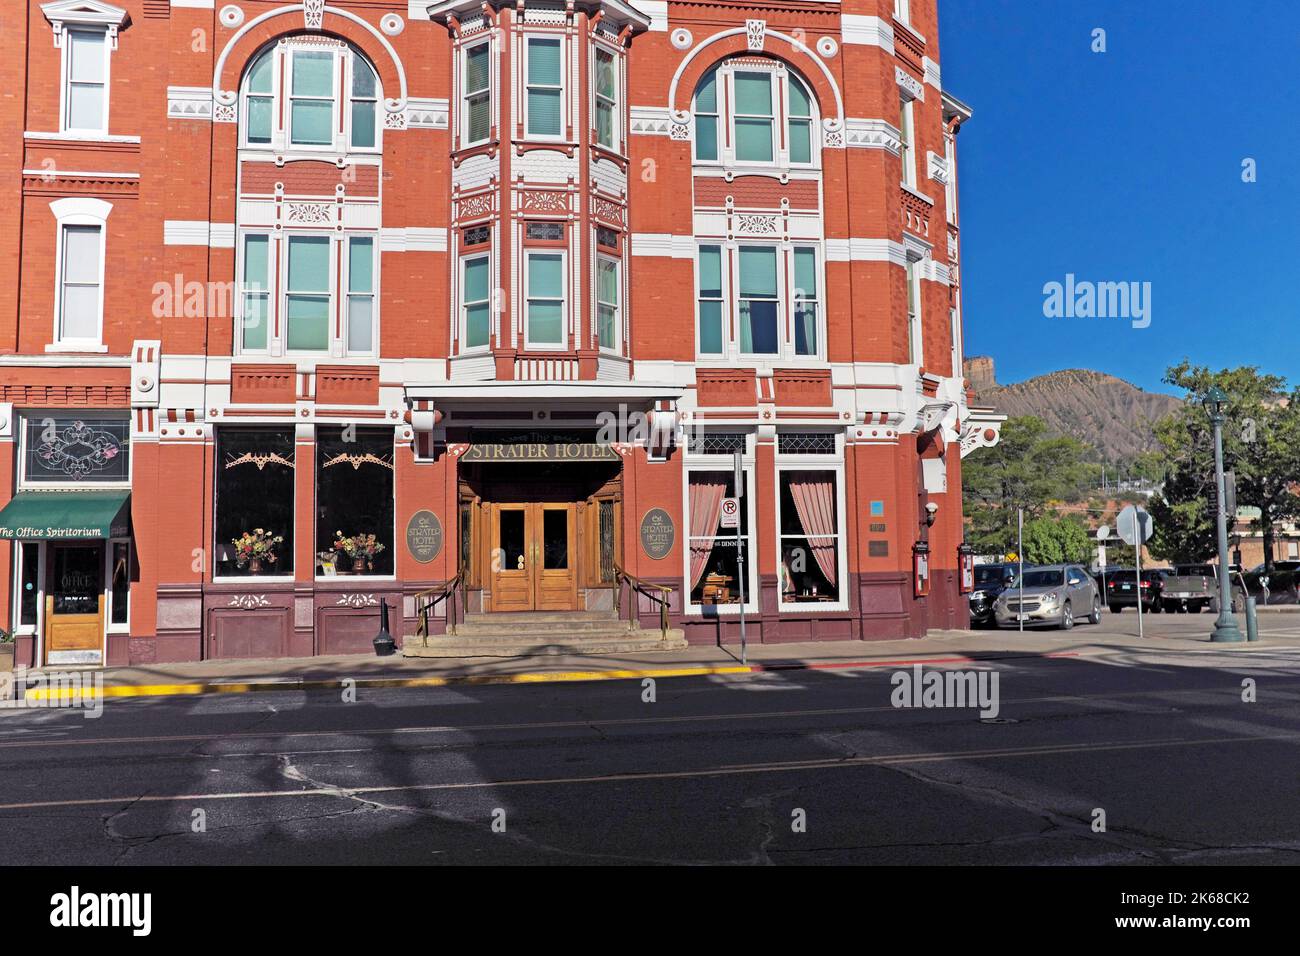 El hotel histórico, el Strater, en la esquina de East 7th Street y Main Avenue en el distrito histórico de Durango, Colorado, Estados Unidos. Foto de stock